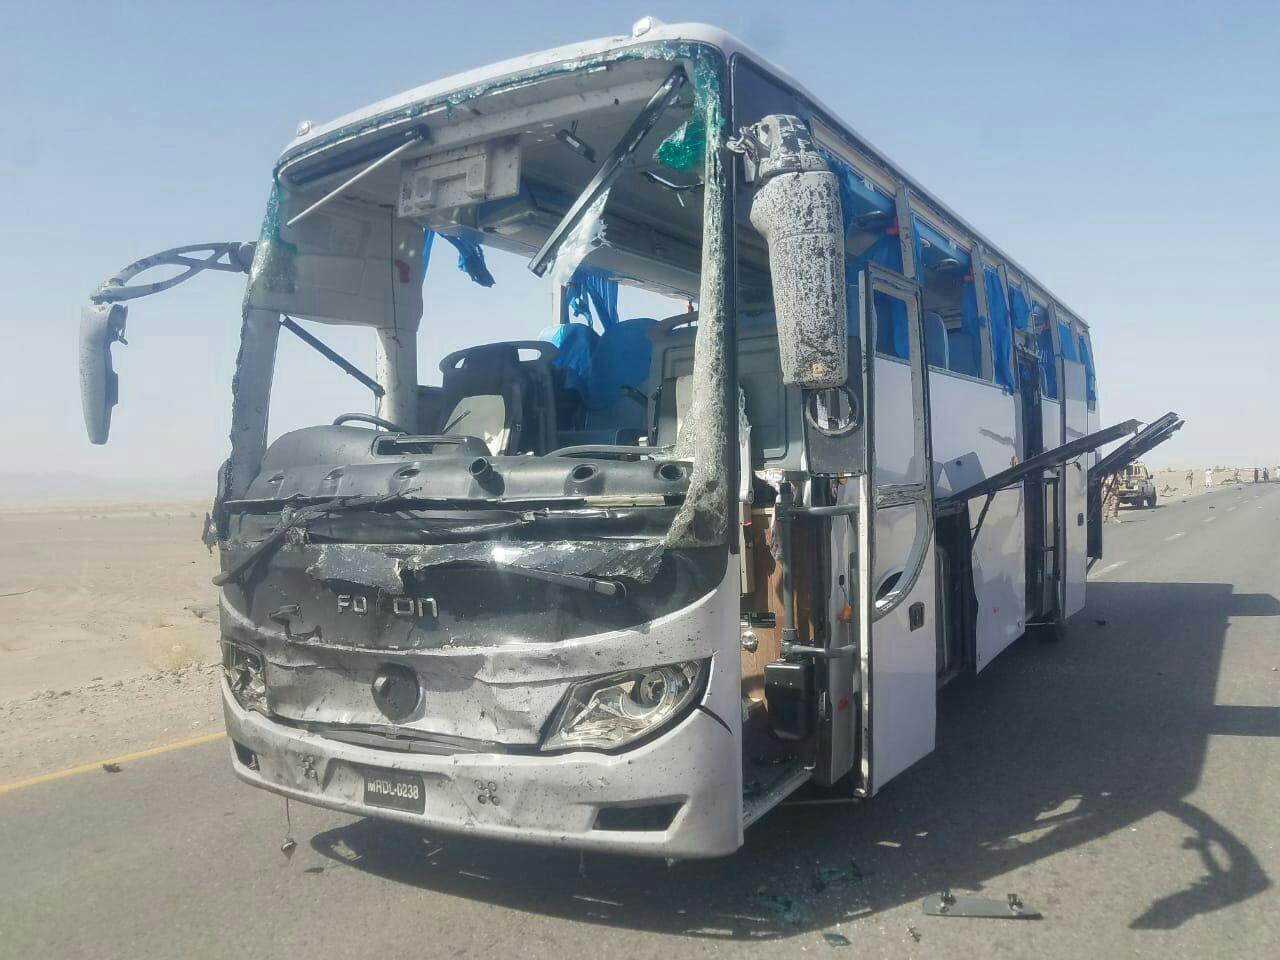 تصویر حمله انتحاری در بلوچستان پاکستان